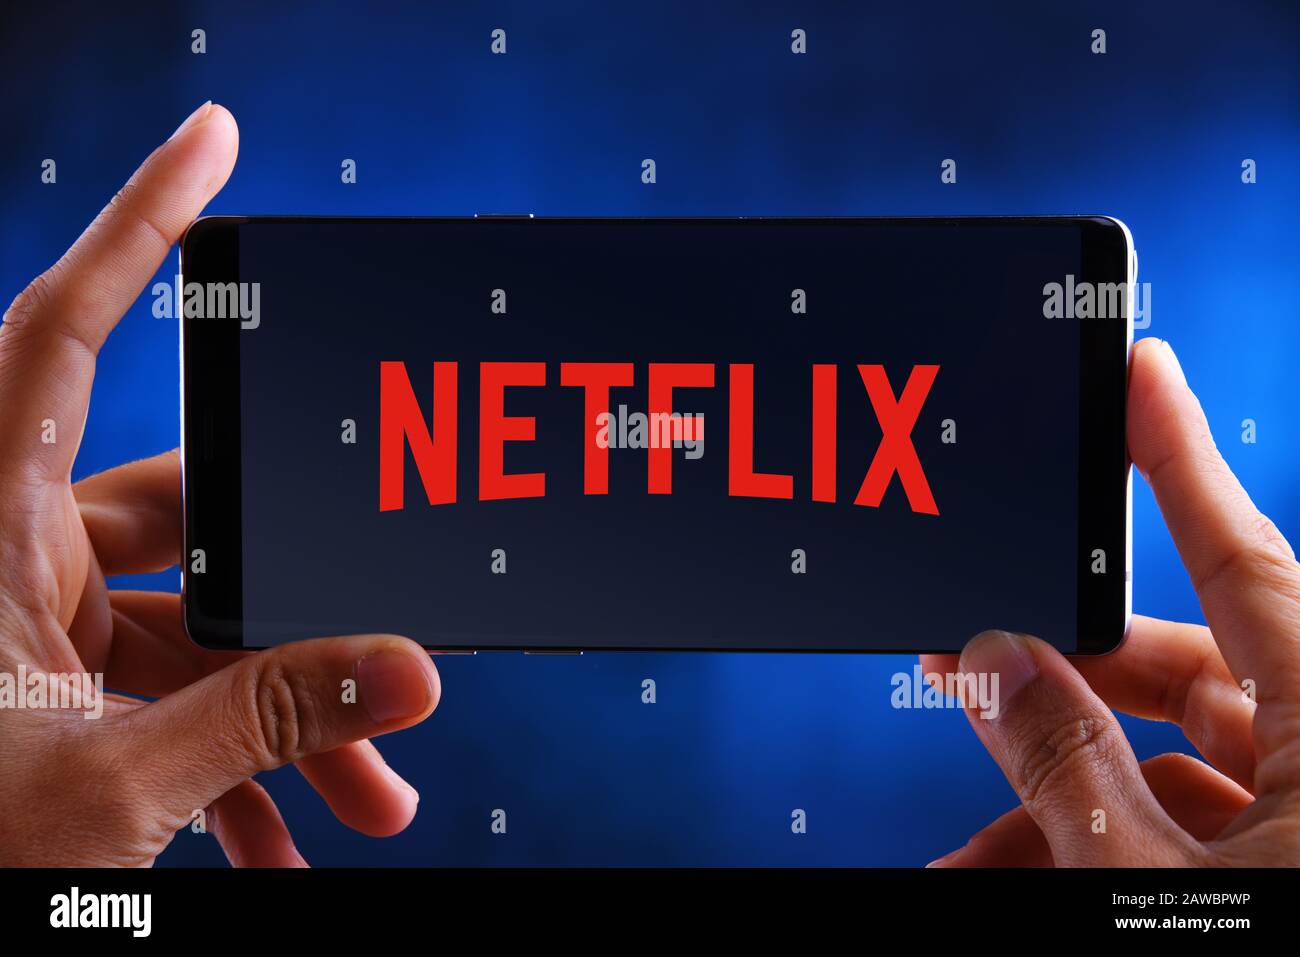 Poznan, POL - 10 JUILLET 2019: Main tenant smartphone affichant le logo de Netflix, un fournisseur américain de services de médias dont le siège social se trouve à Los Gatos, Californie Banque D'Images